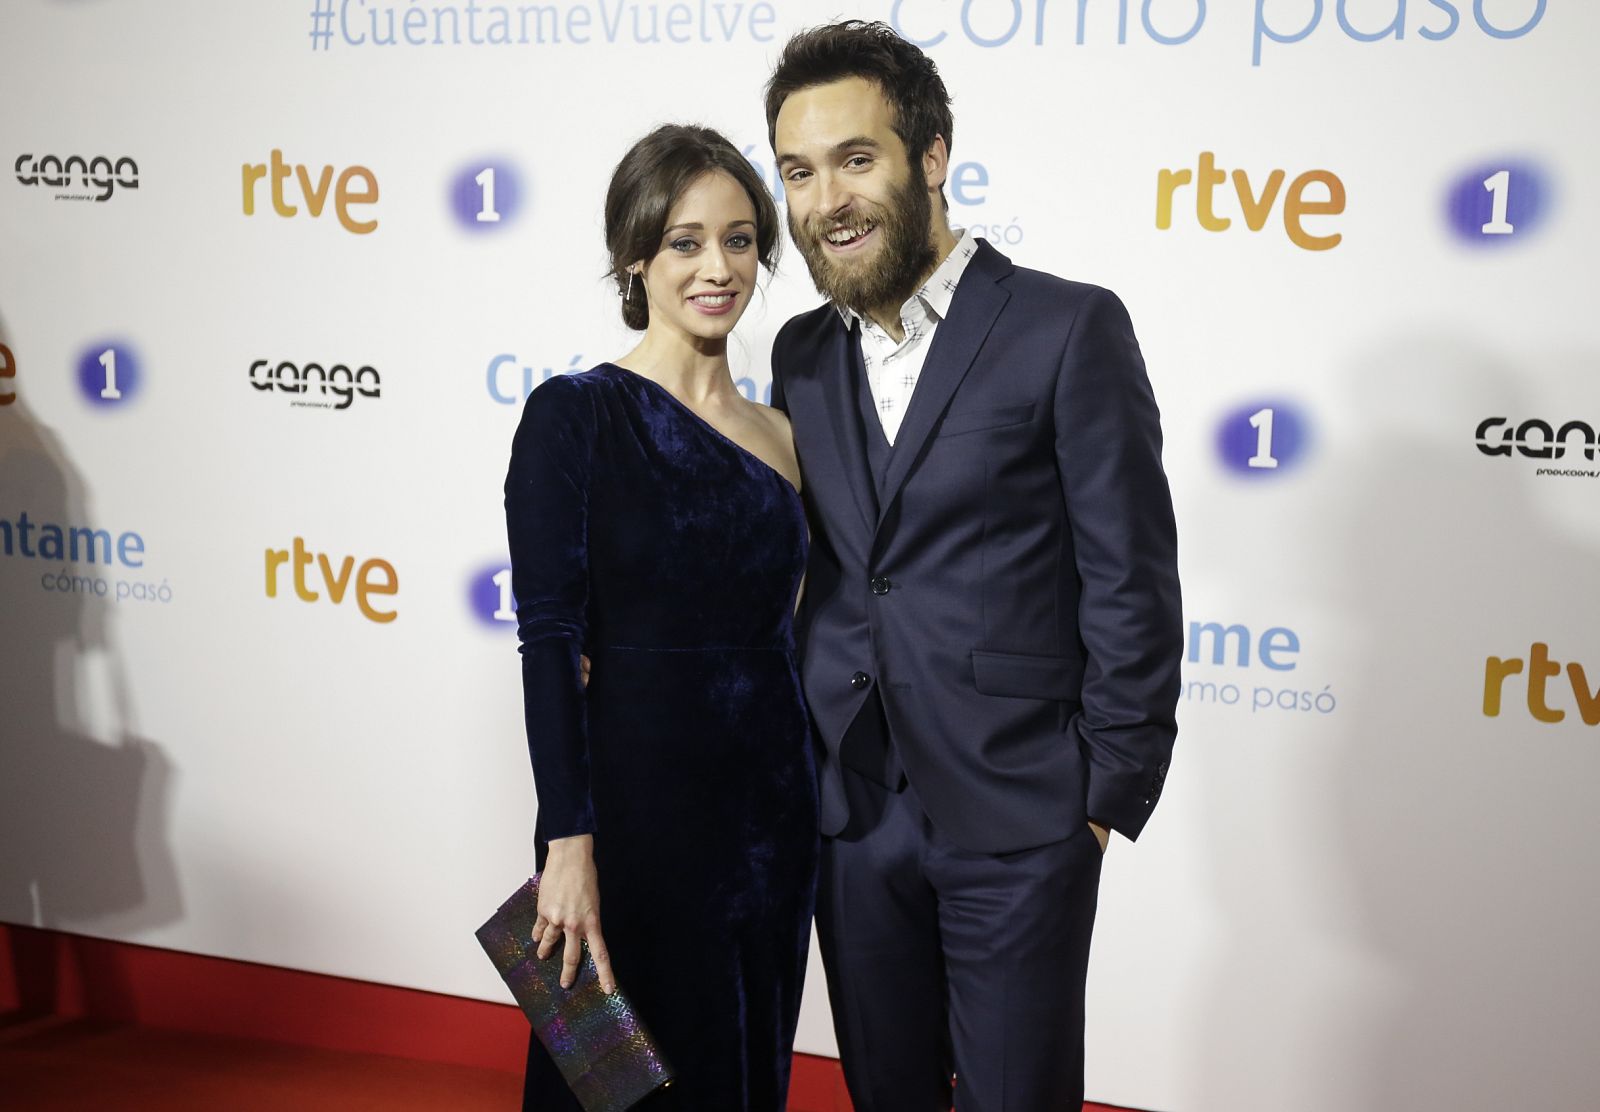 Ricardo Gómez y Elena Rivera durante la presentación de la 19 temporada de la serie " Cuéntame cómo pasó" en Madrid.